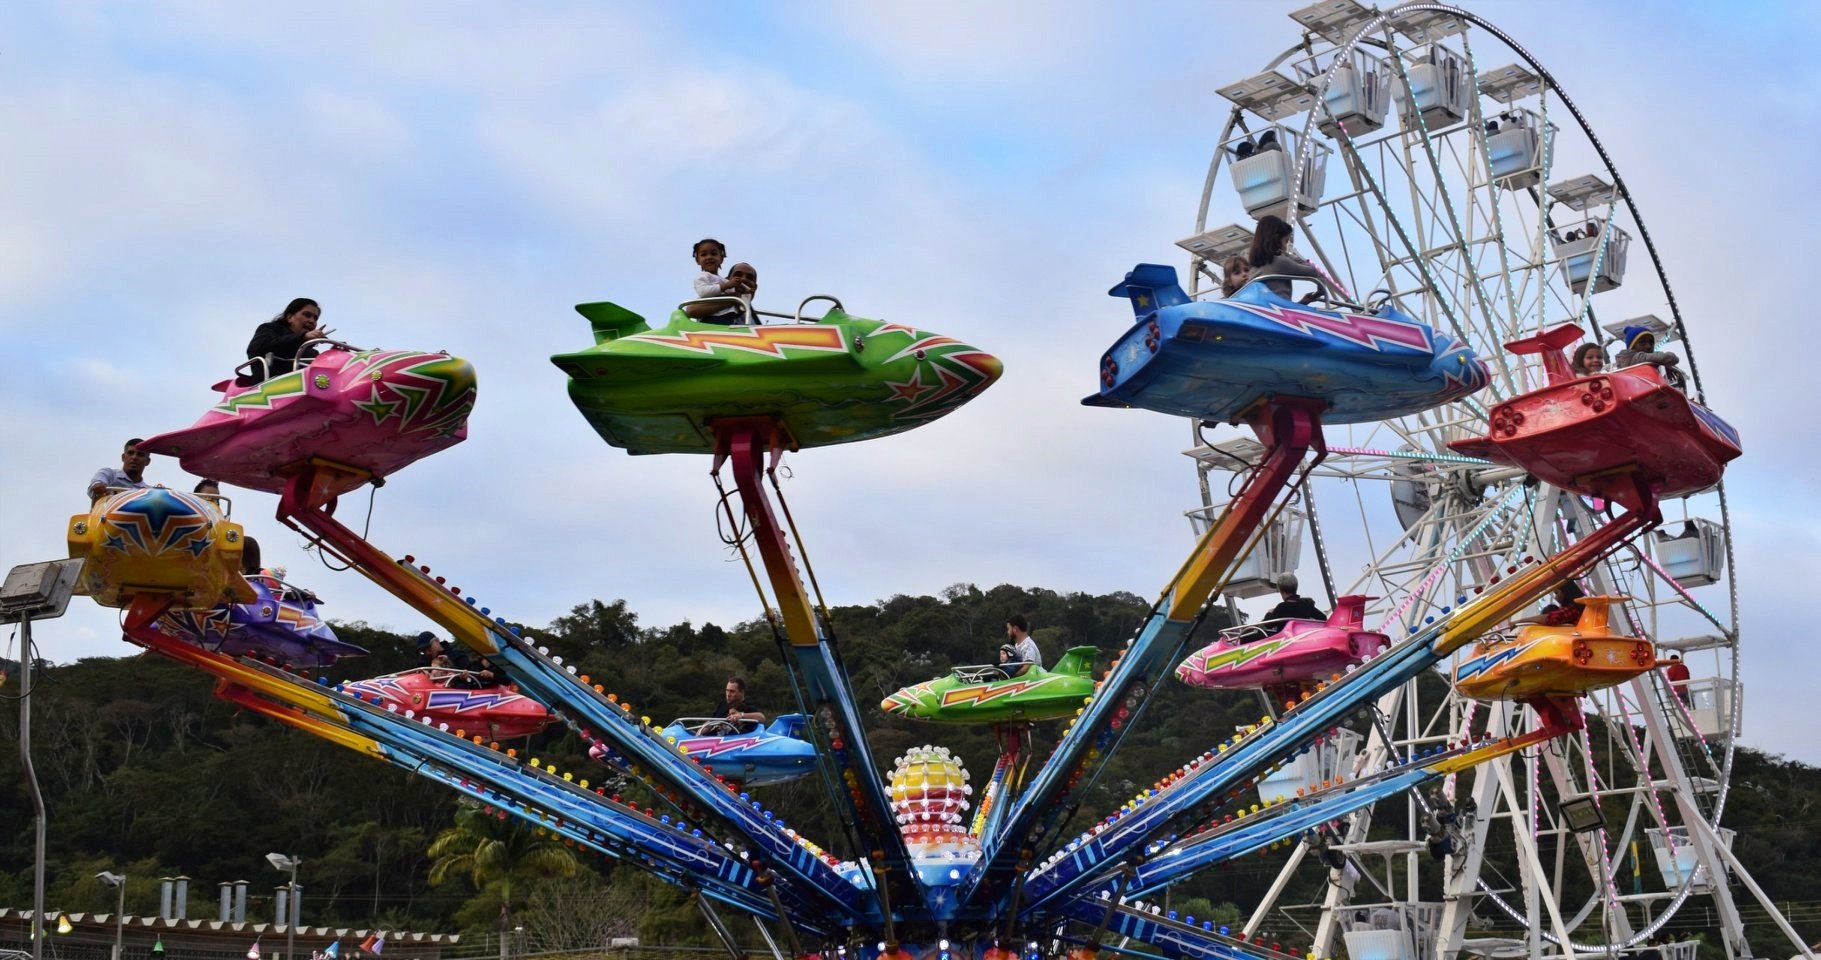 Expo Cordeiro: Ingresso para o parque de diversões vai custar R$ 8